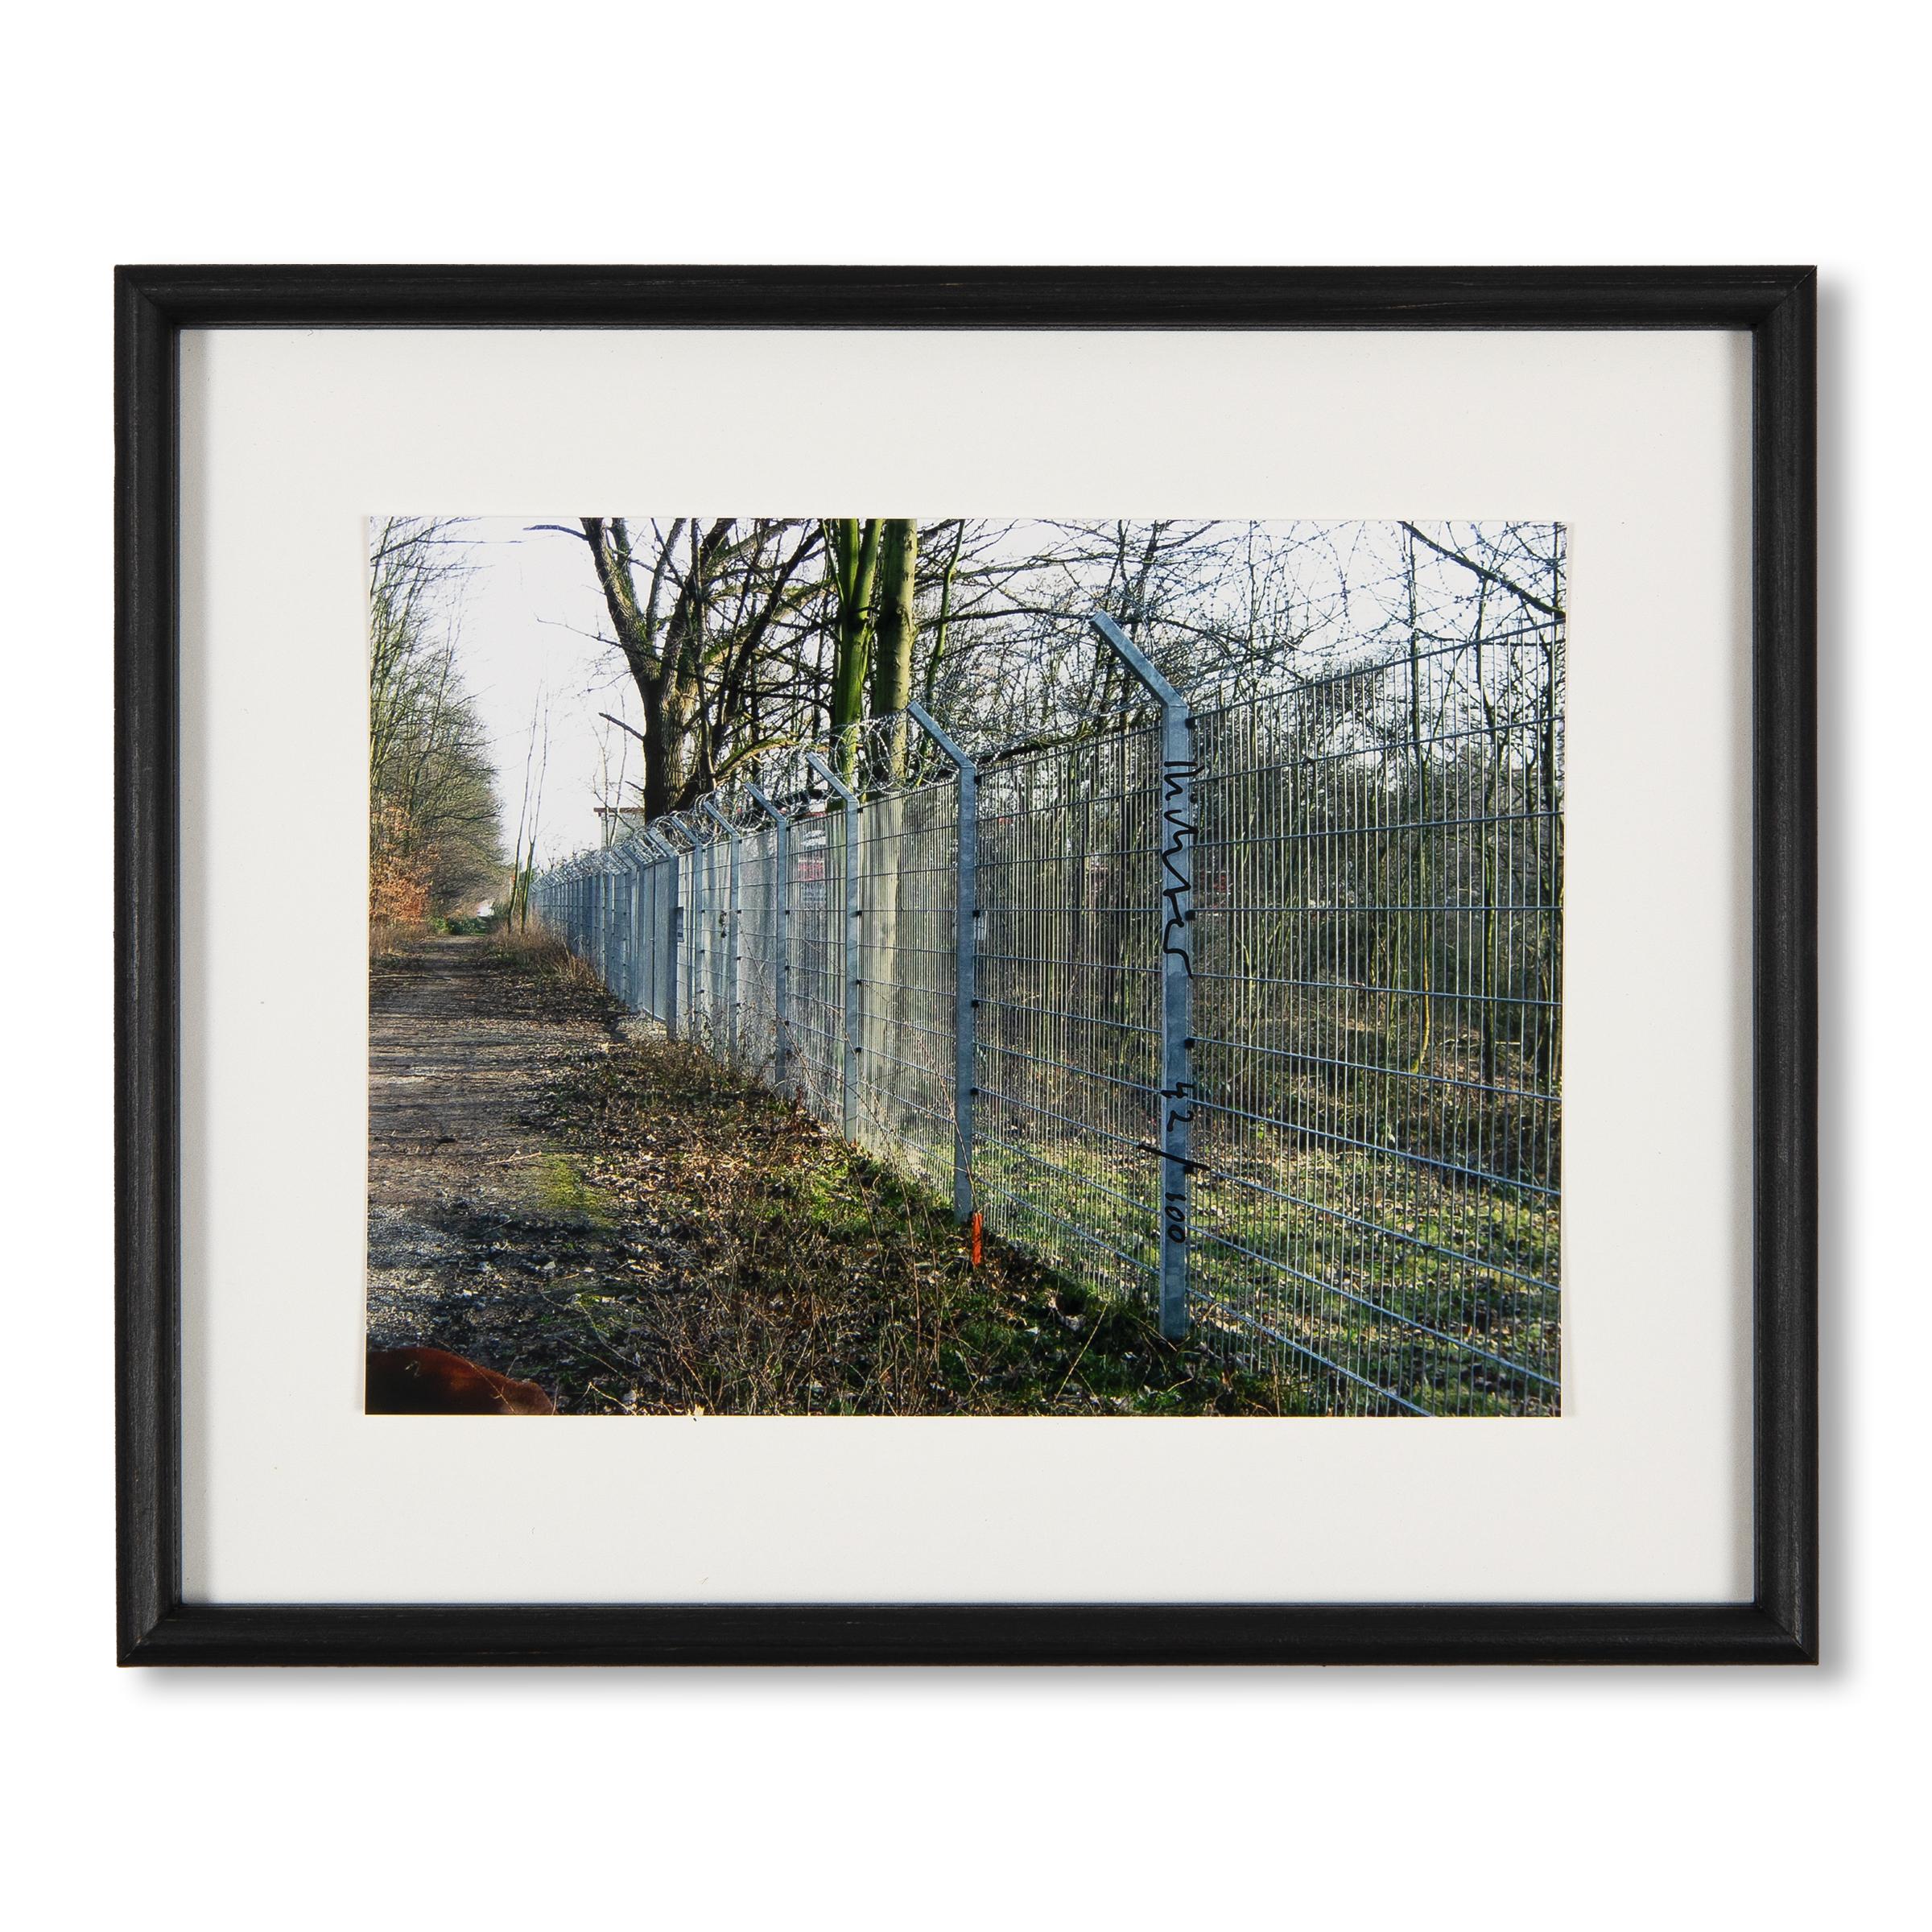 Gerhard Richter (alemán, n. 1932)
Zaun, 2010
Soporte: Fotografía en color, montada sobre cartón blanco, en marco del artista
Dimensiones de la impresión: 15 x 20 cm
Dimensiones del marco: 23,5 x 28,5 cm
Edición de 100: Firmada y numerada a